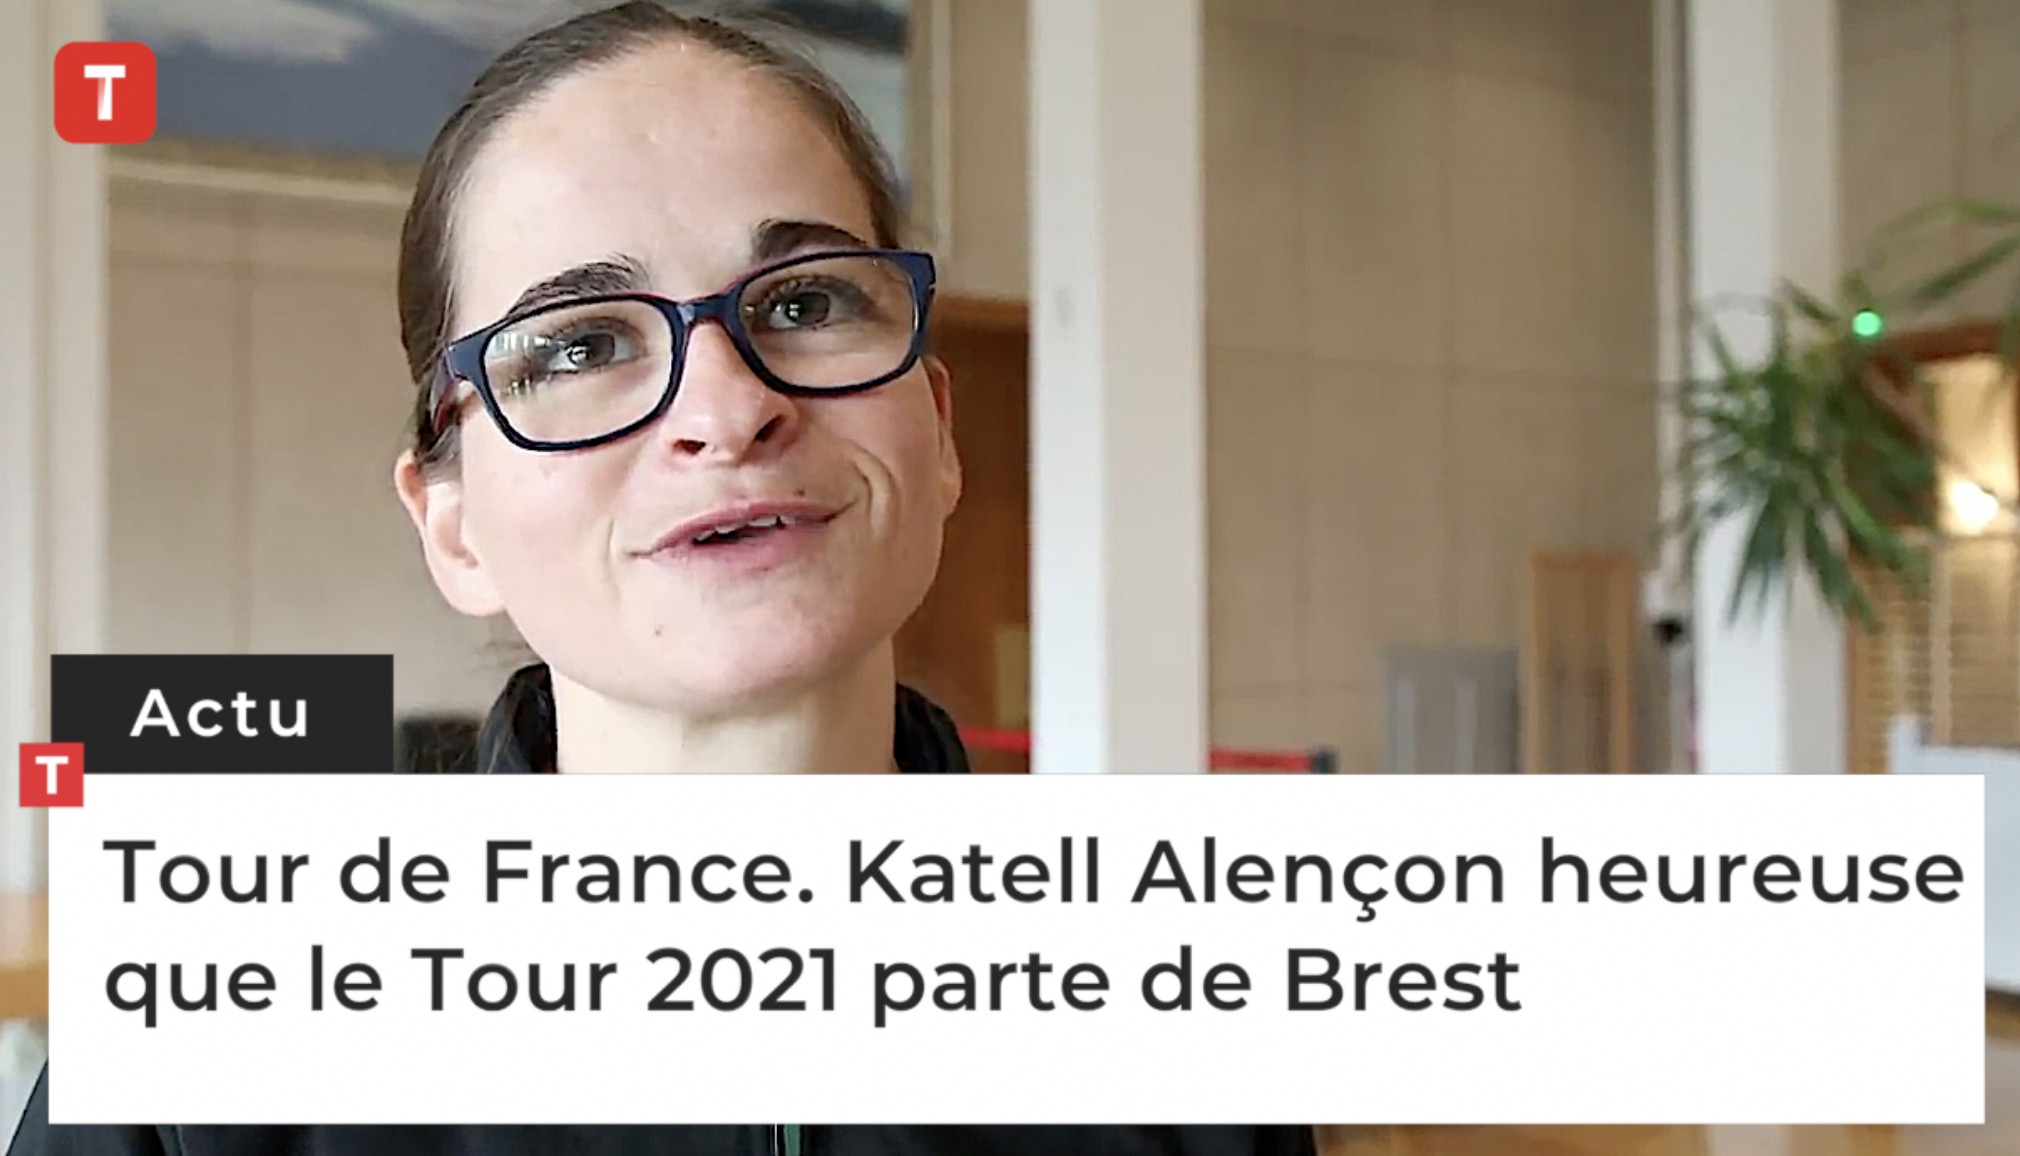 Tour de France. Katell Alençon heureuse que le Tour 2021 parte de Brest (Le Télégramme)